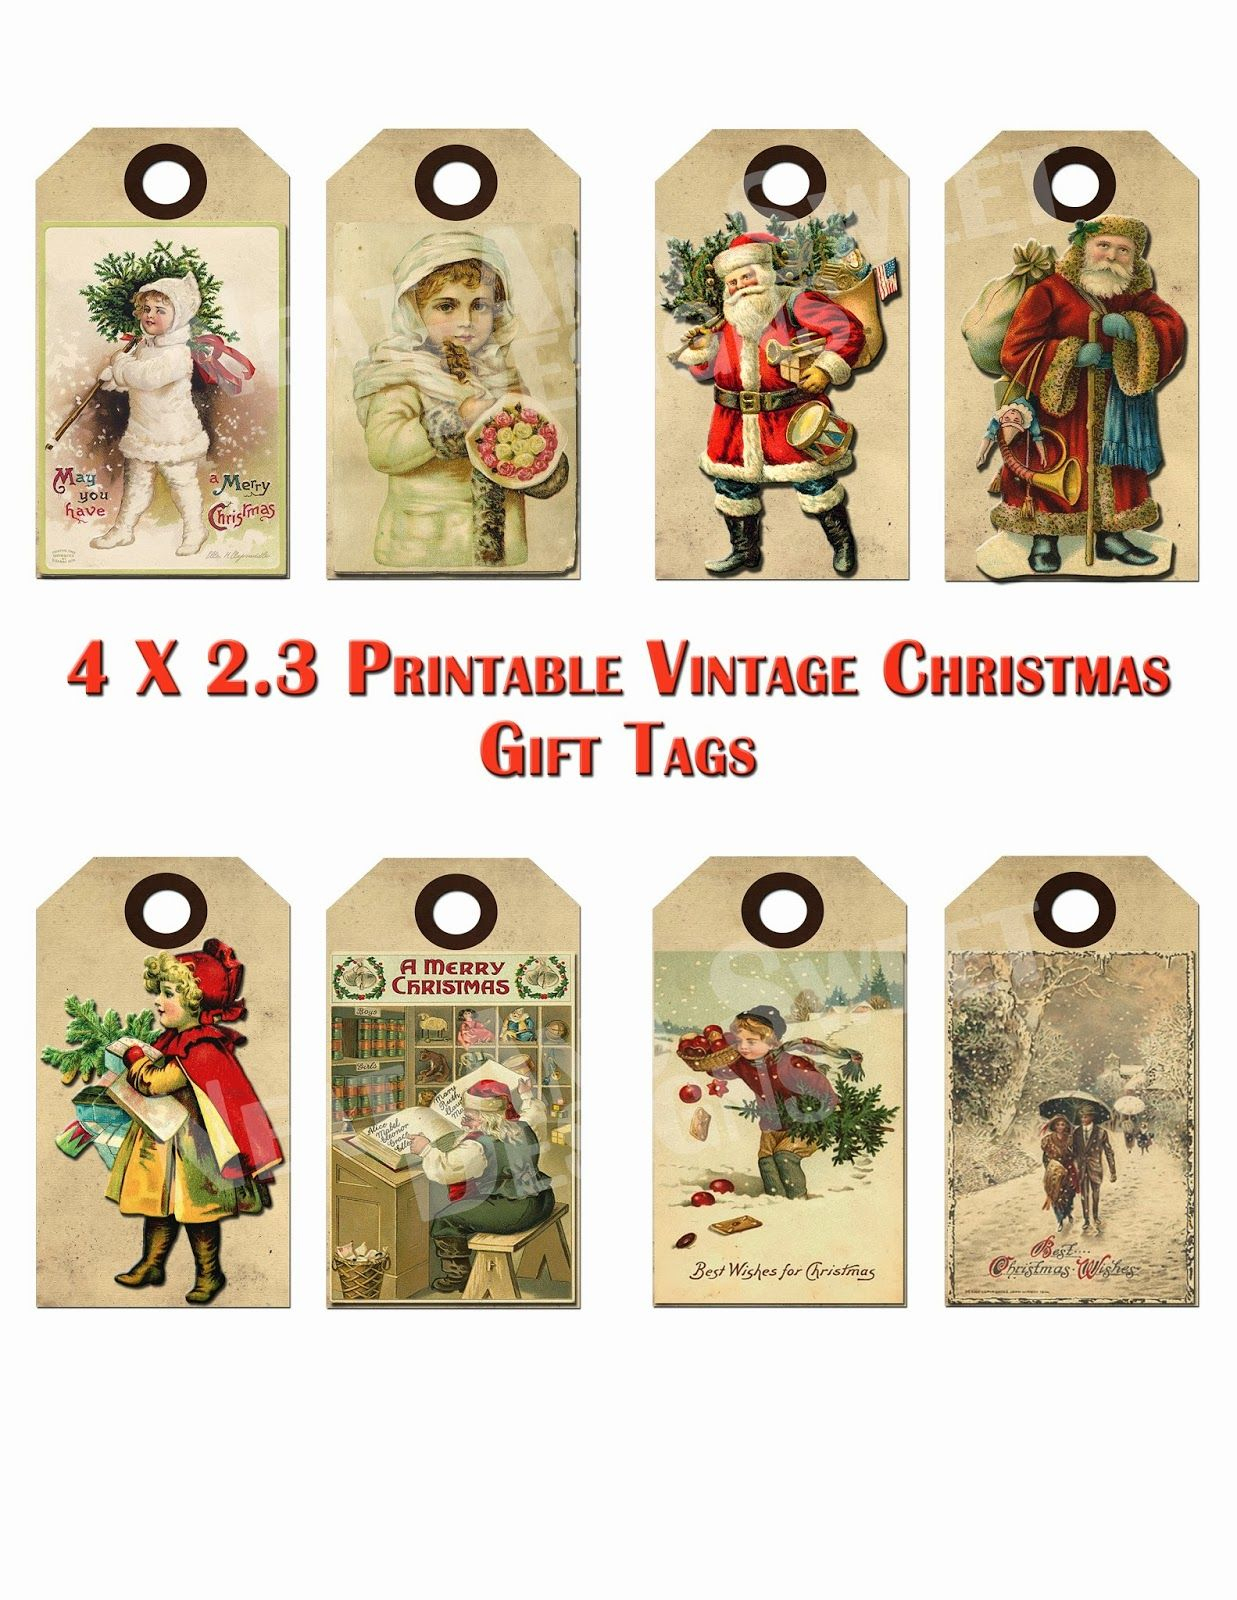 Free Printable Vintage Christmas Tags - Google Search | Craft Ideas - Free Printable Vintage Christmas Tags For Gifts